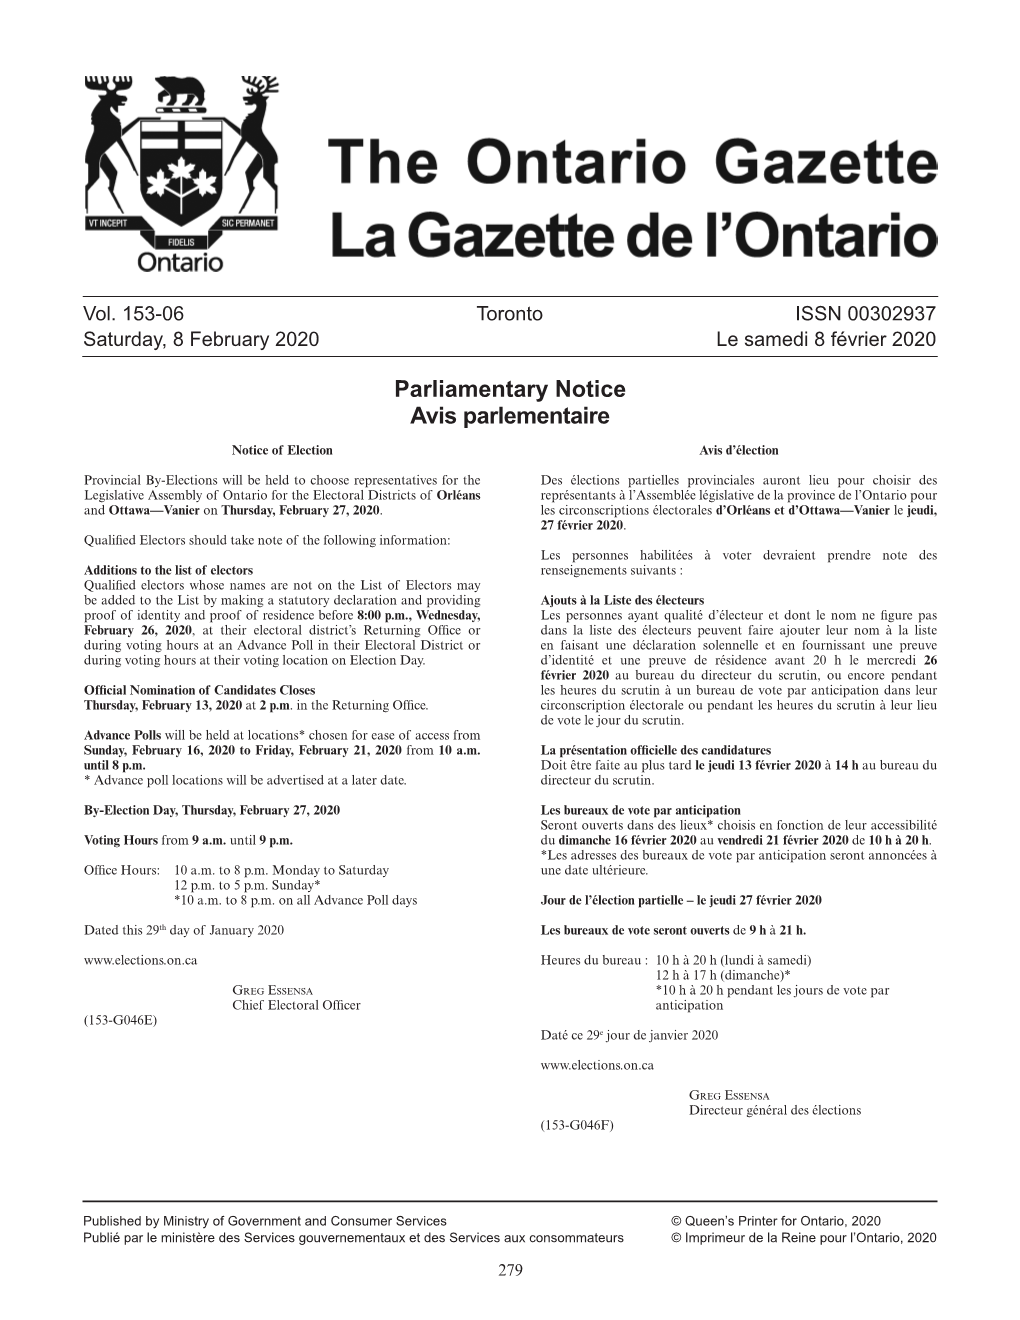 Ontario Gazette Volume 153 Issue 06, La Gazette De L'ontario Volume 153